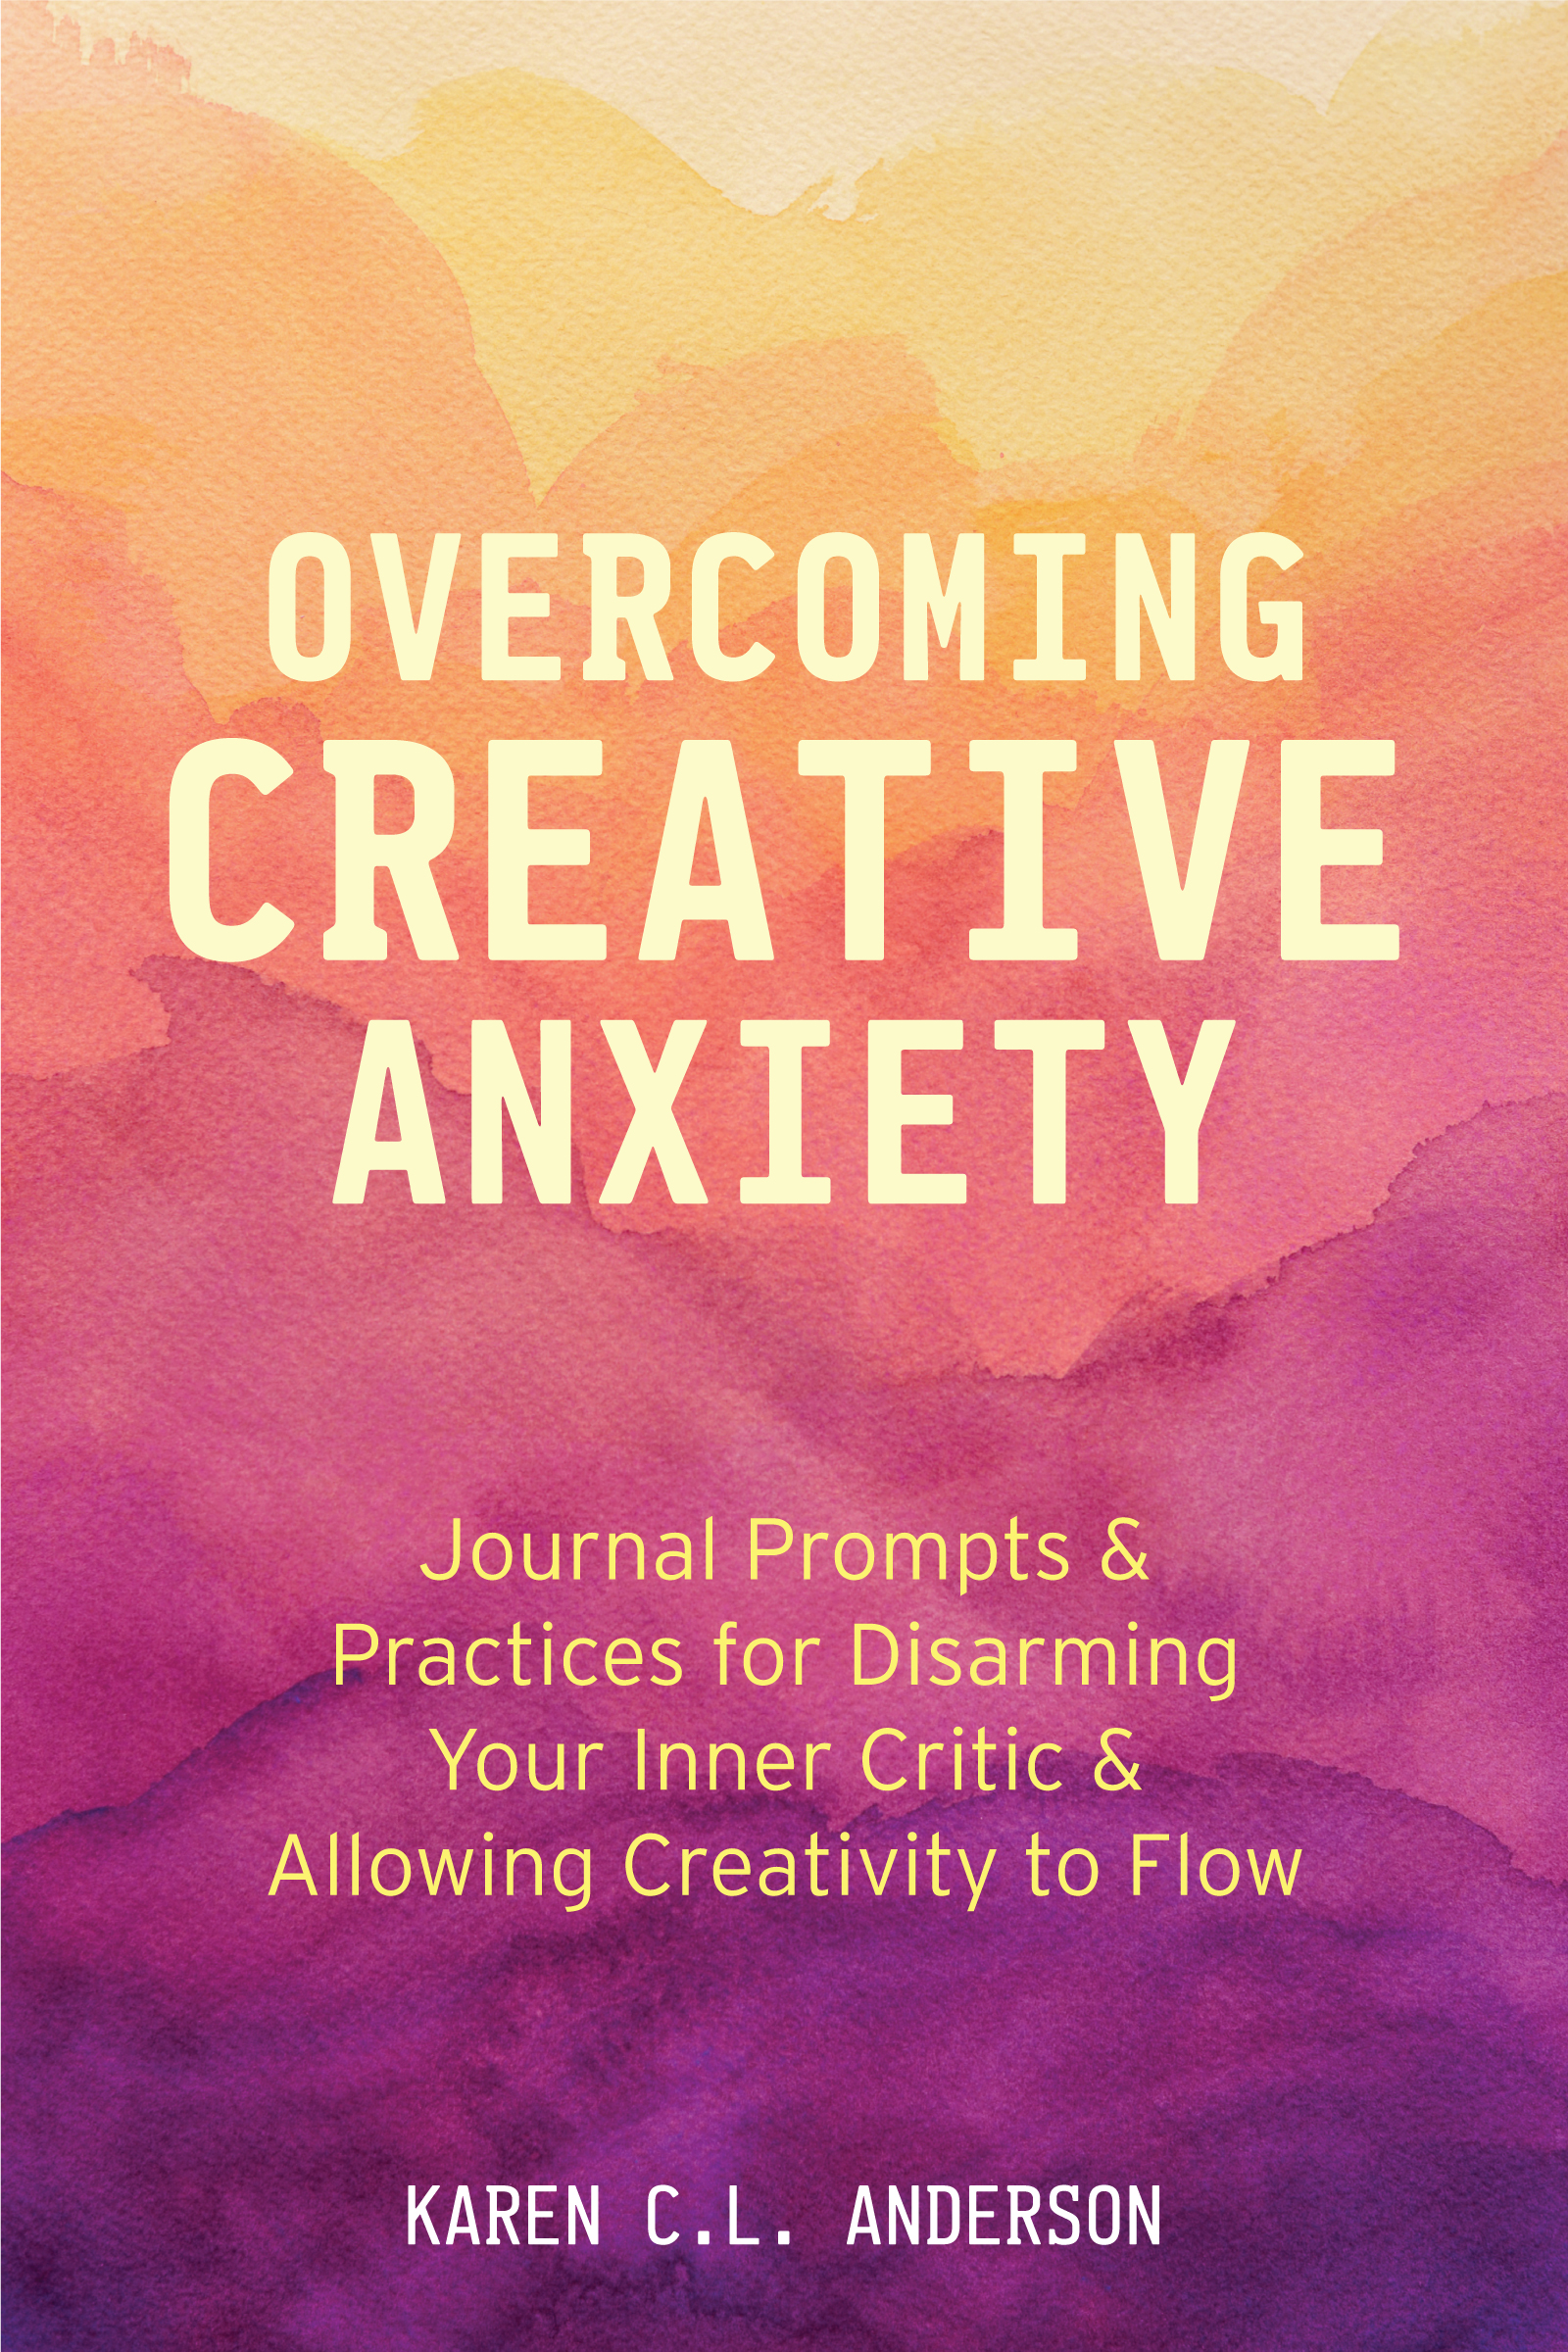 Overcoming Creative Anxiety